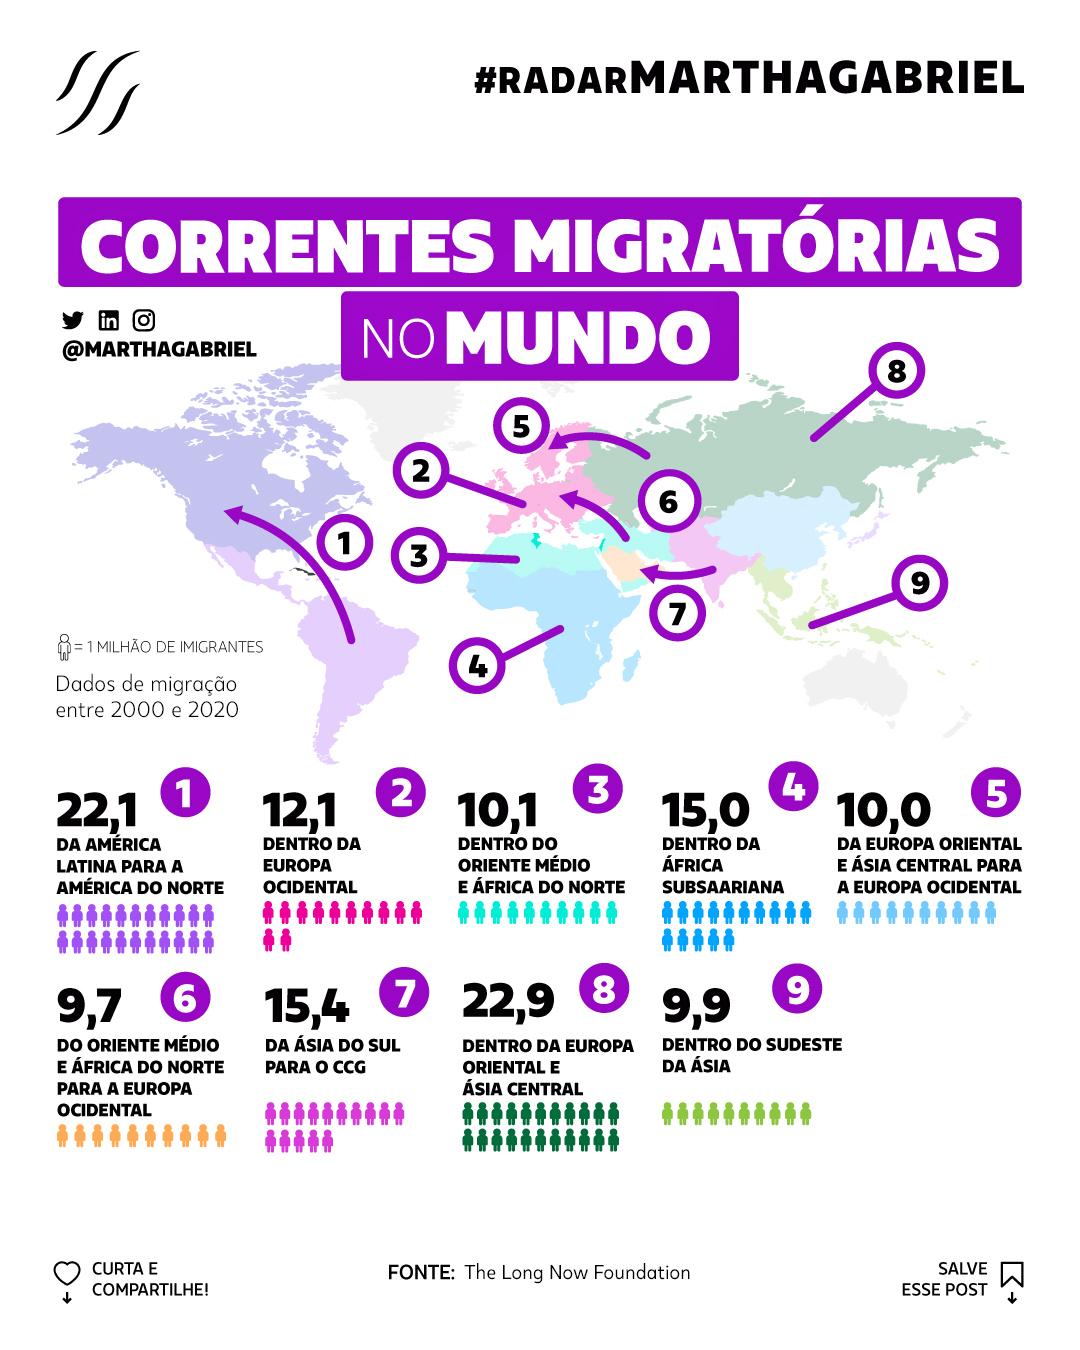 Correntes migratórias no mundo